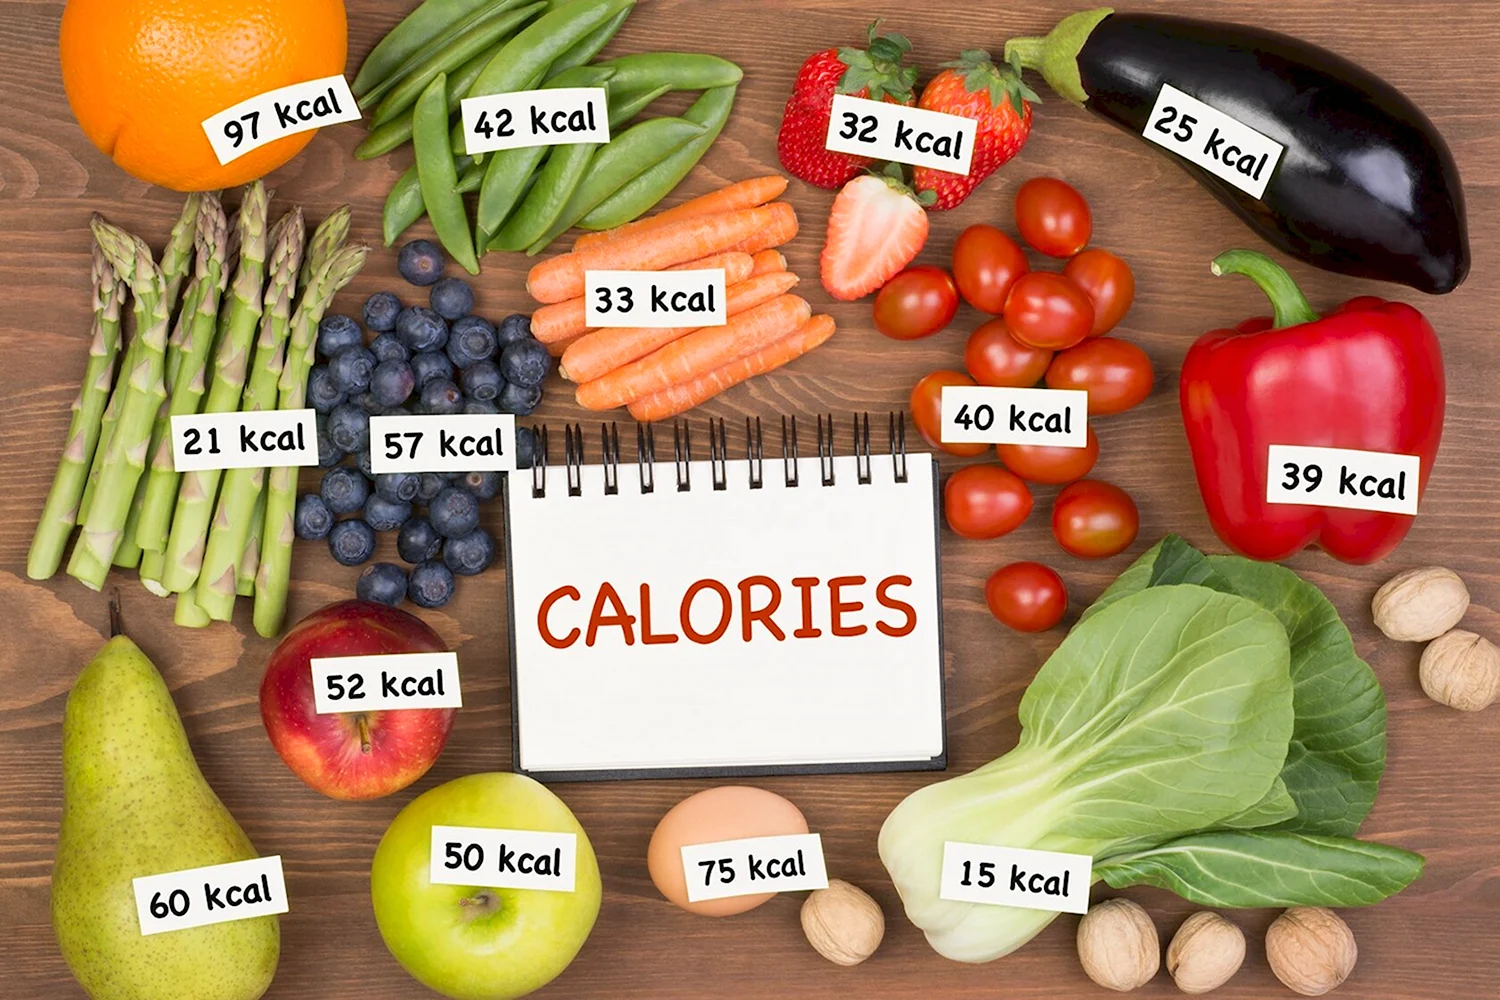 Таблица калорийности продуктов питания